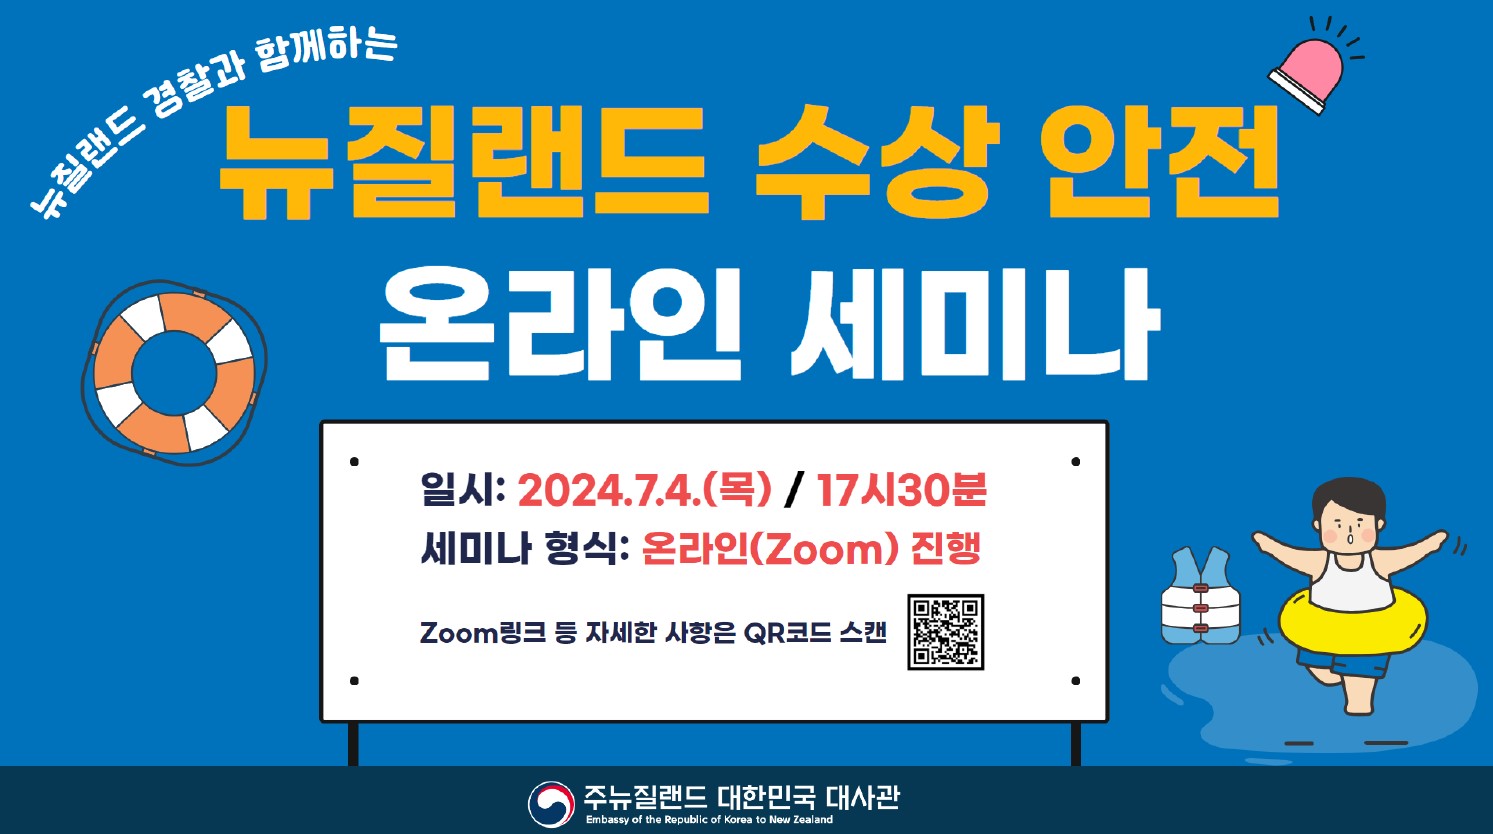 '뉴질랜드 수상안전 온라인 세미나' 개최 안내